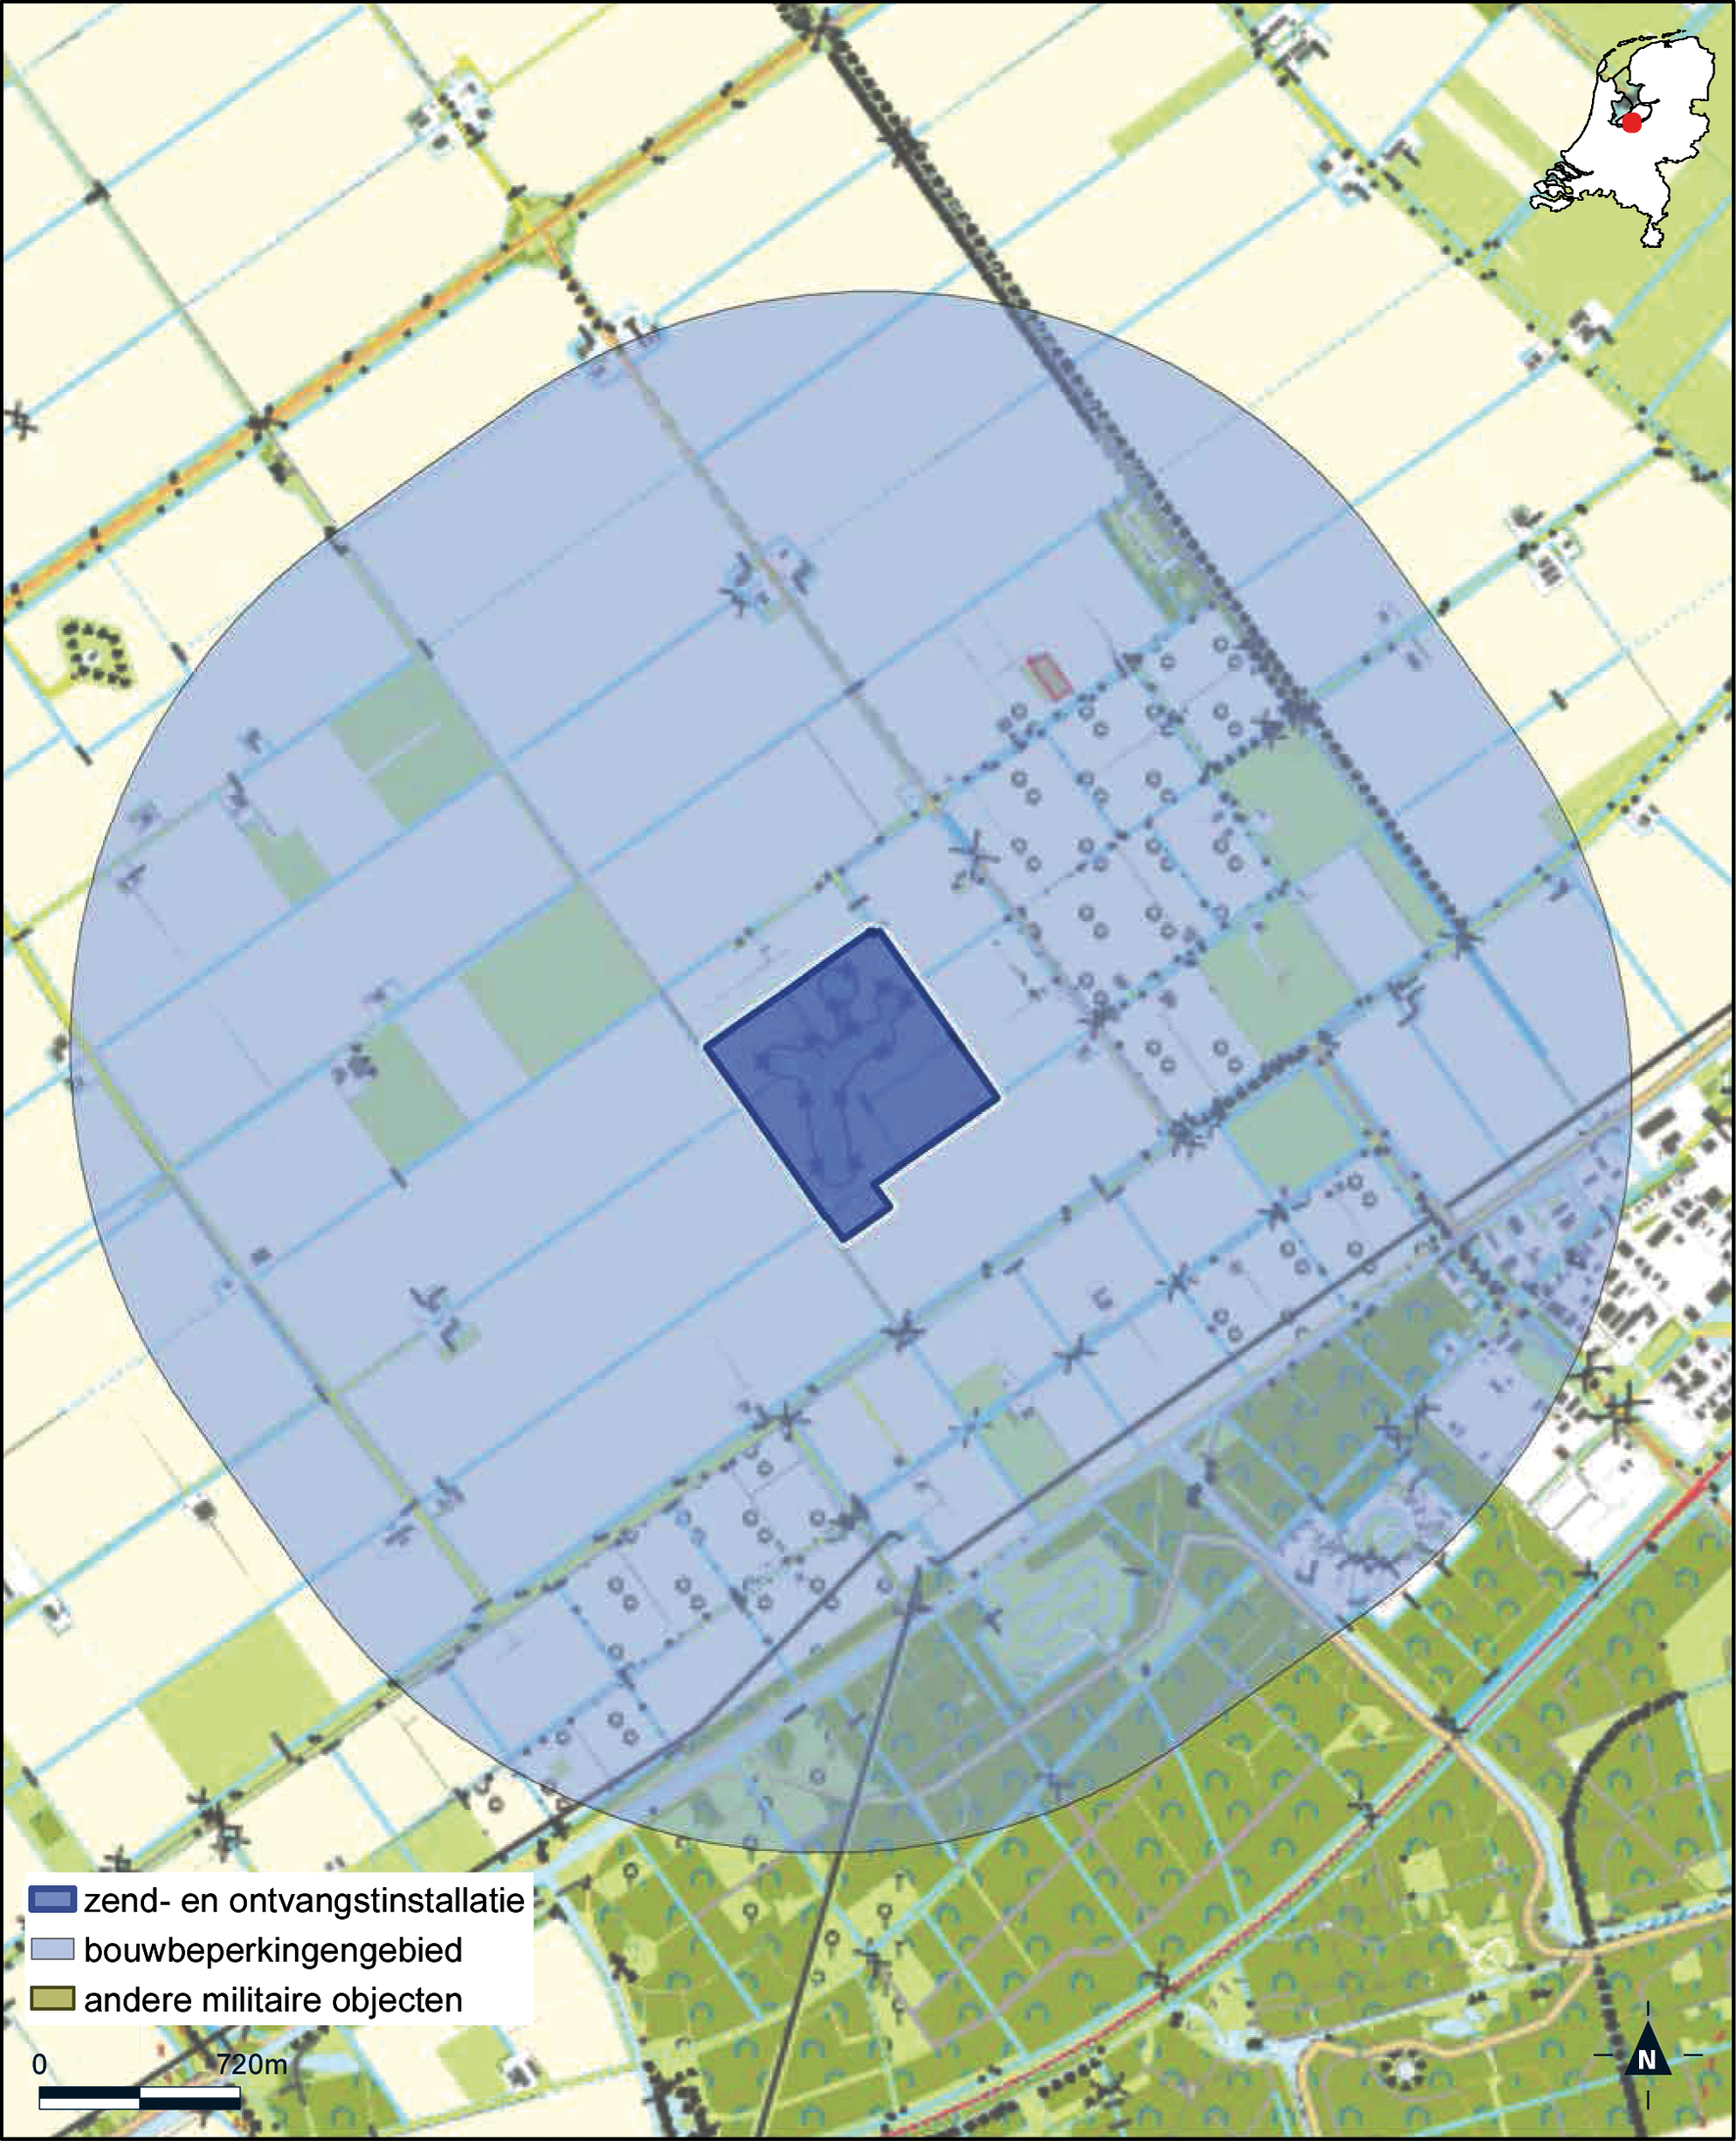 Kaart zend- en ontvangstinstallatie buiten militair luchtvaartterrein antennepark Zeewolde